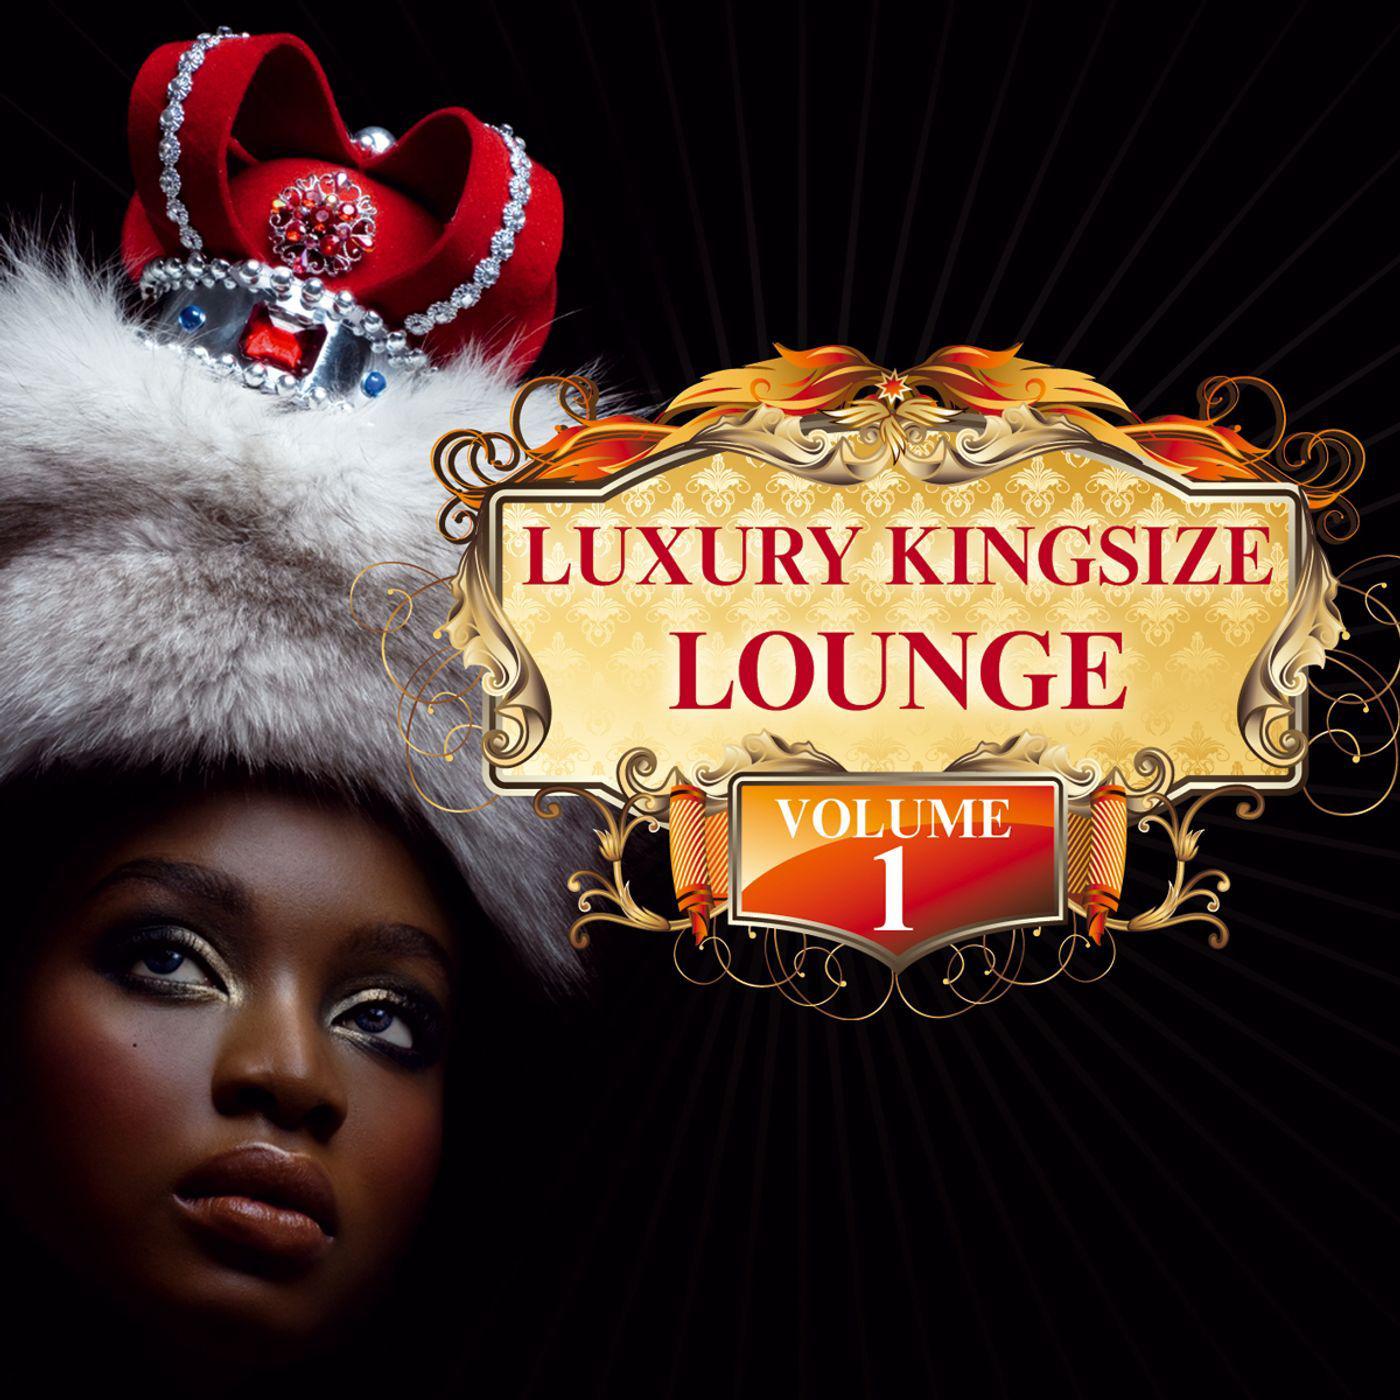 Luxury Kingsize Lounge Vol. 1